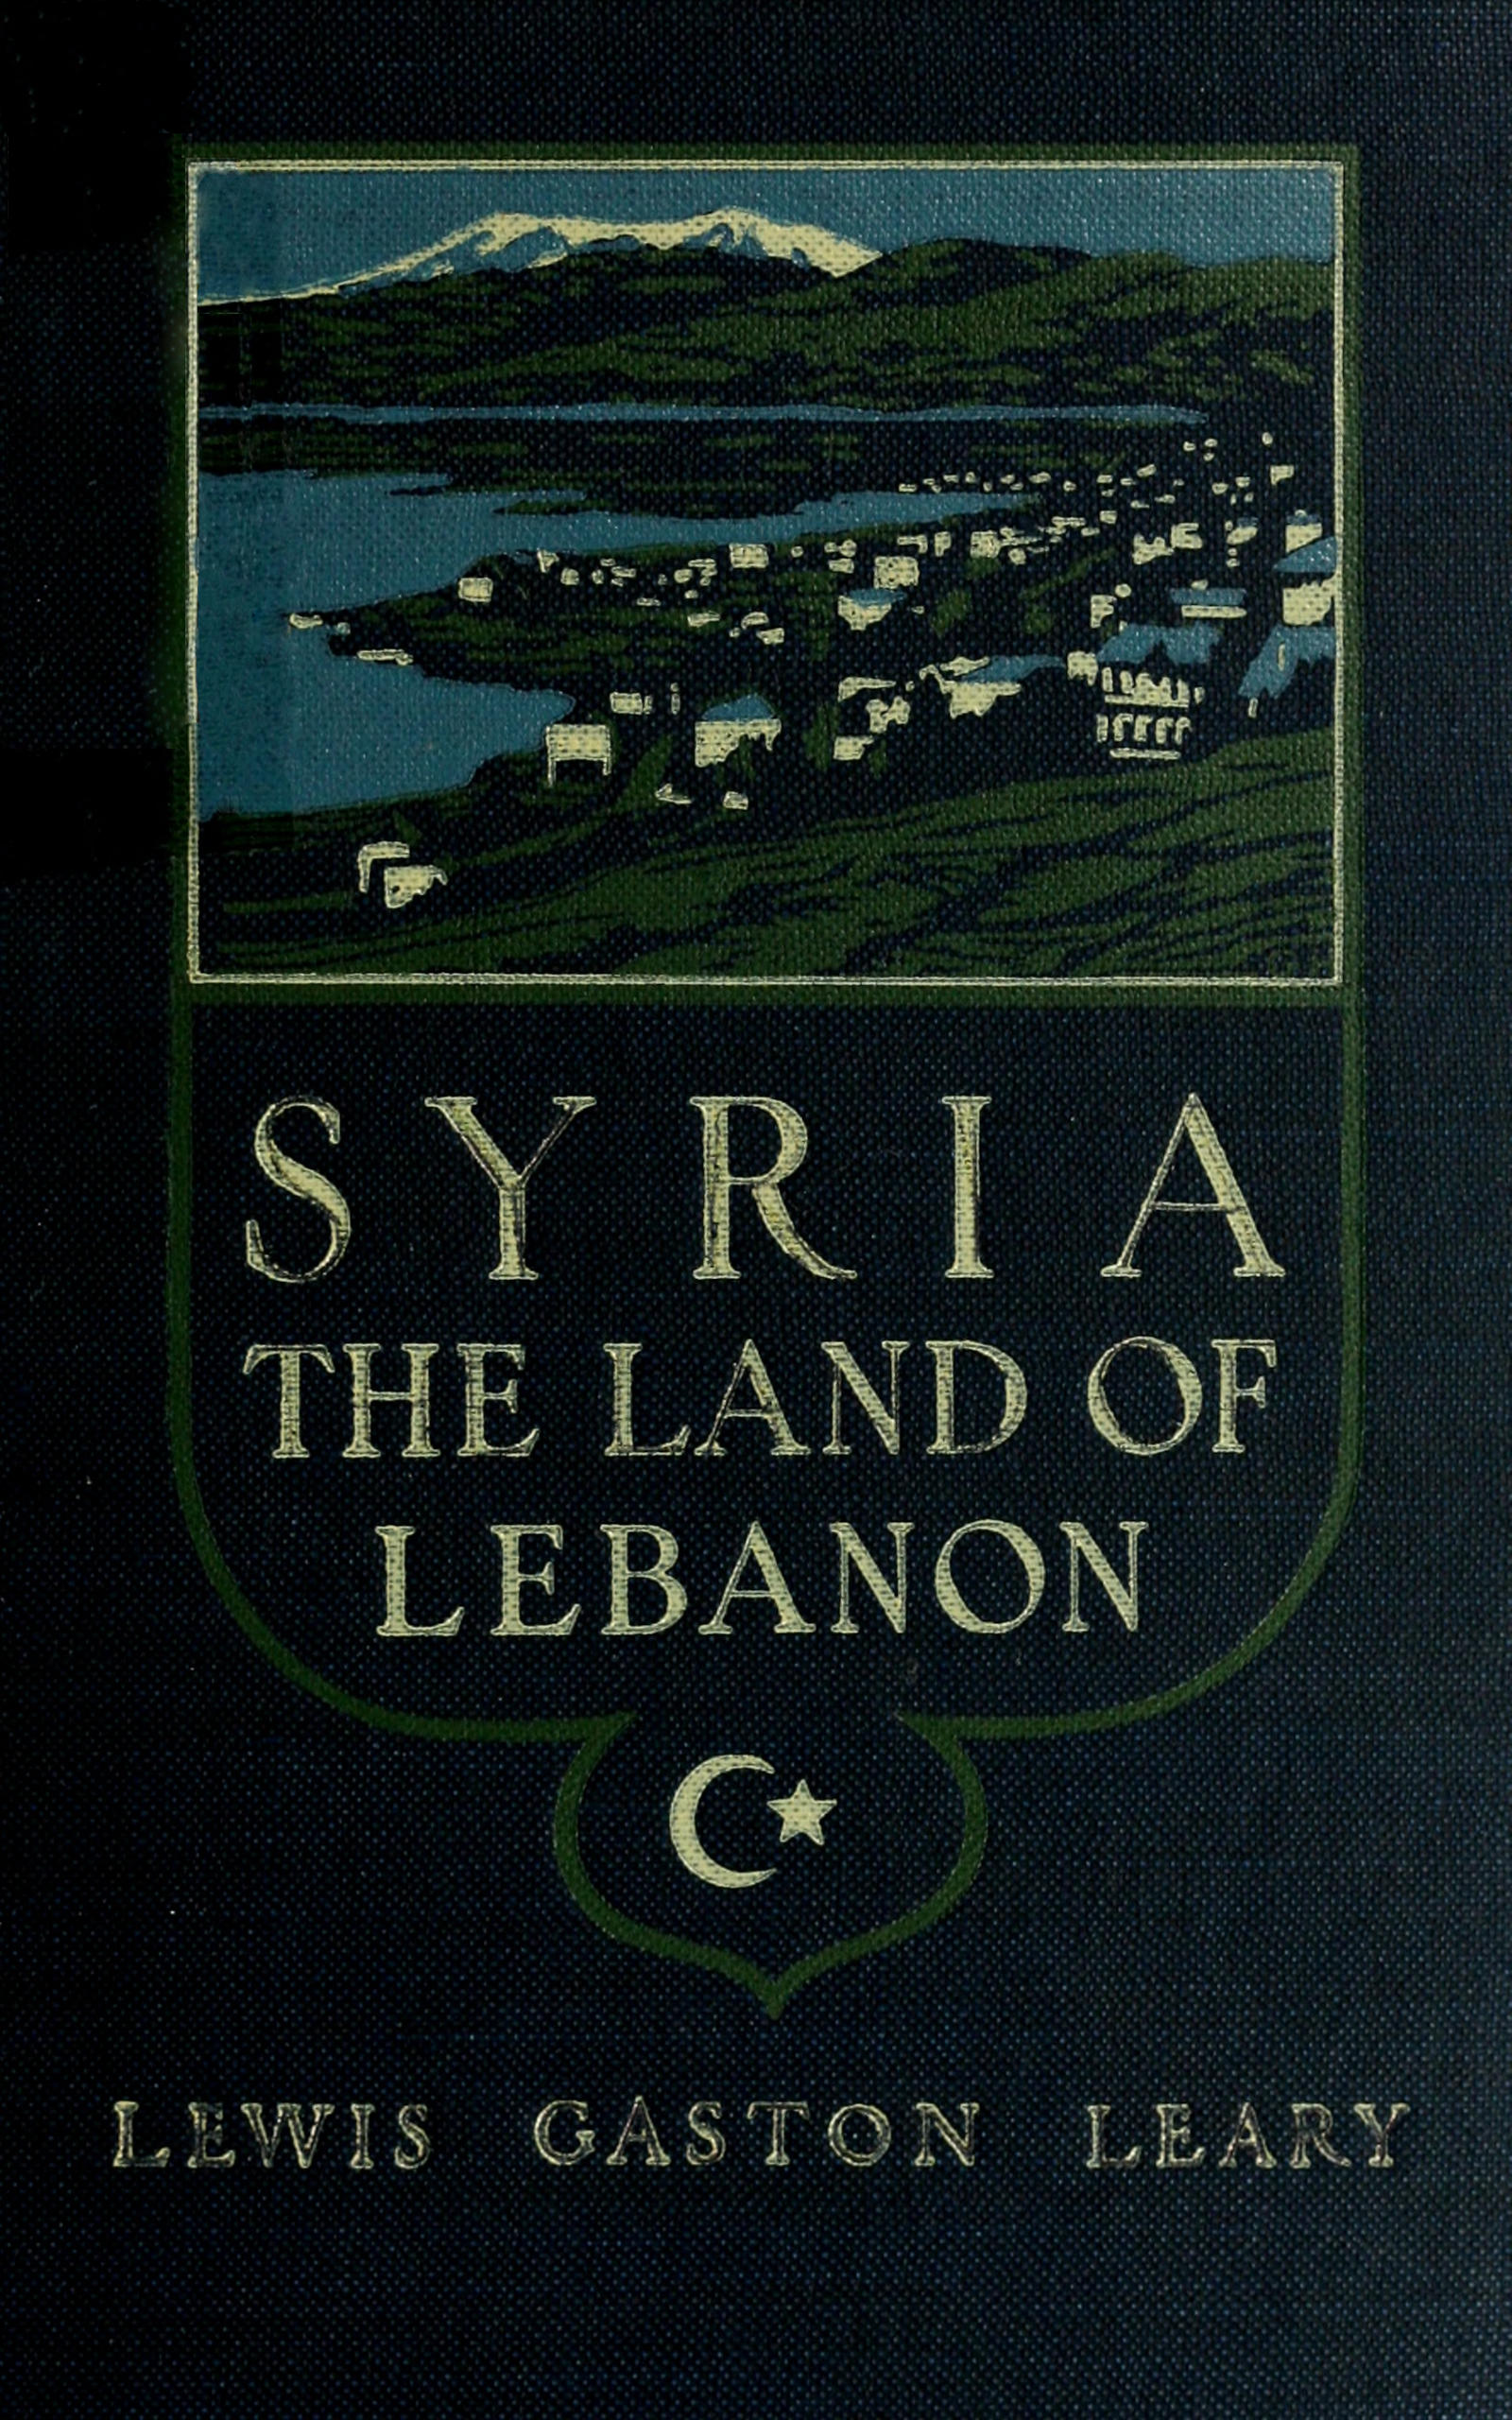 Syria, the land of Lebanon